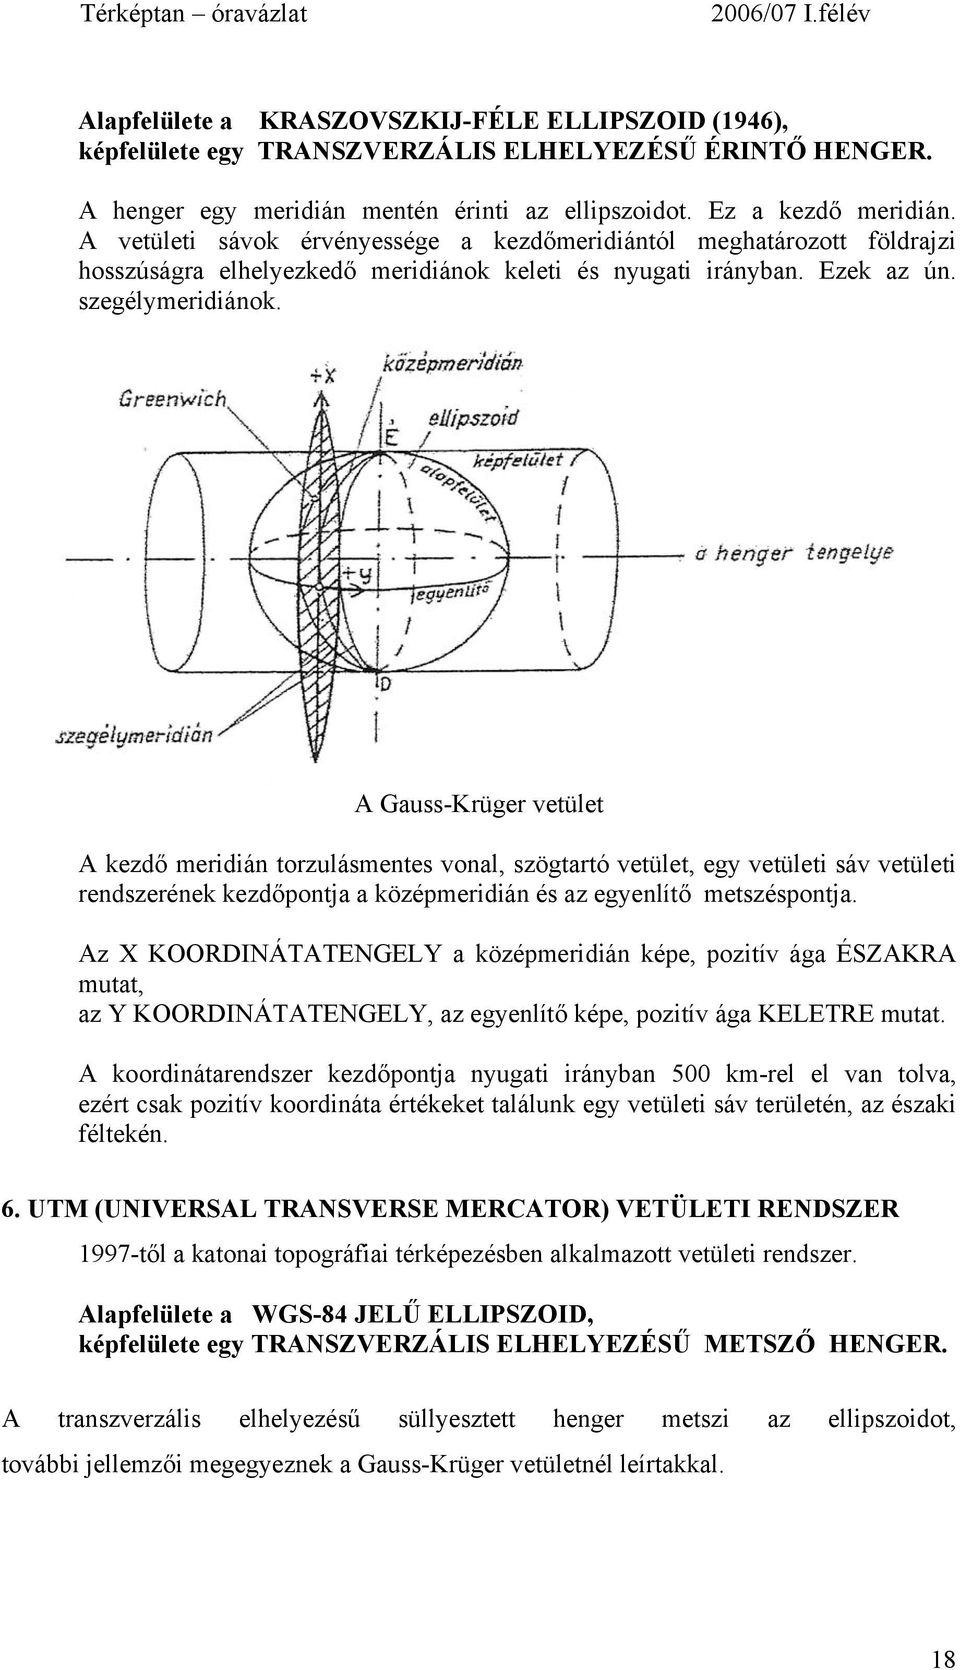 A Gauss-Krüger vetület A kezdő meridián torzulásmentes vonal, szögtartó vetület, egy vetületi sáv vetületi rendszerének kezdőpontja a középmeridián és az egyenlítő metszéspontja.